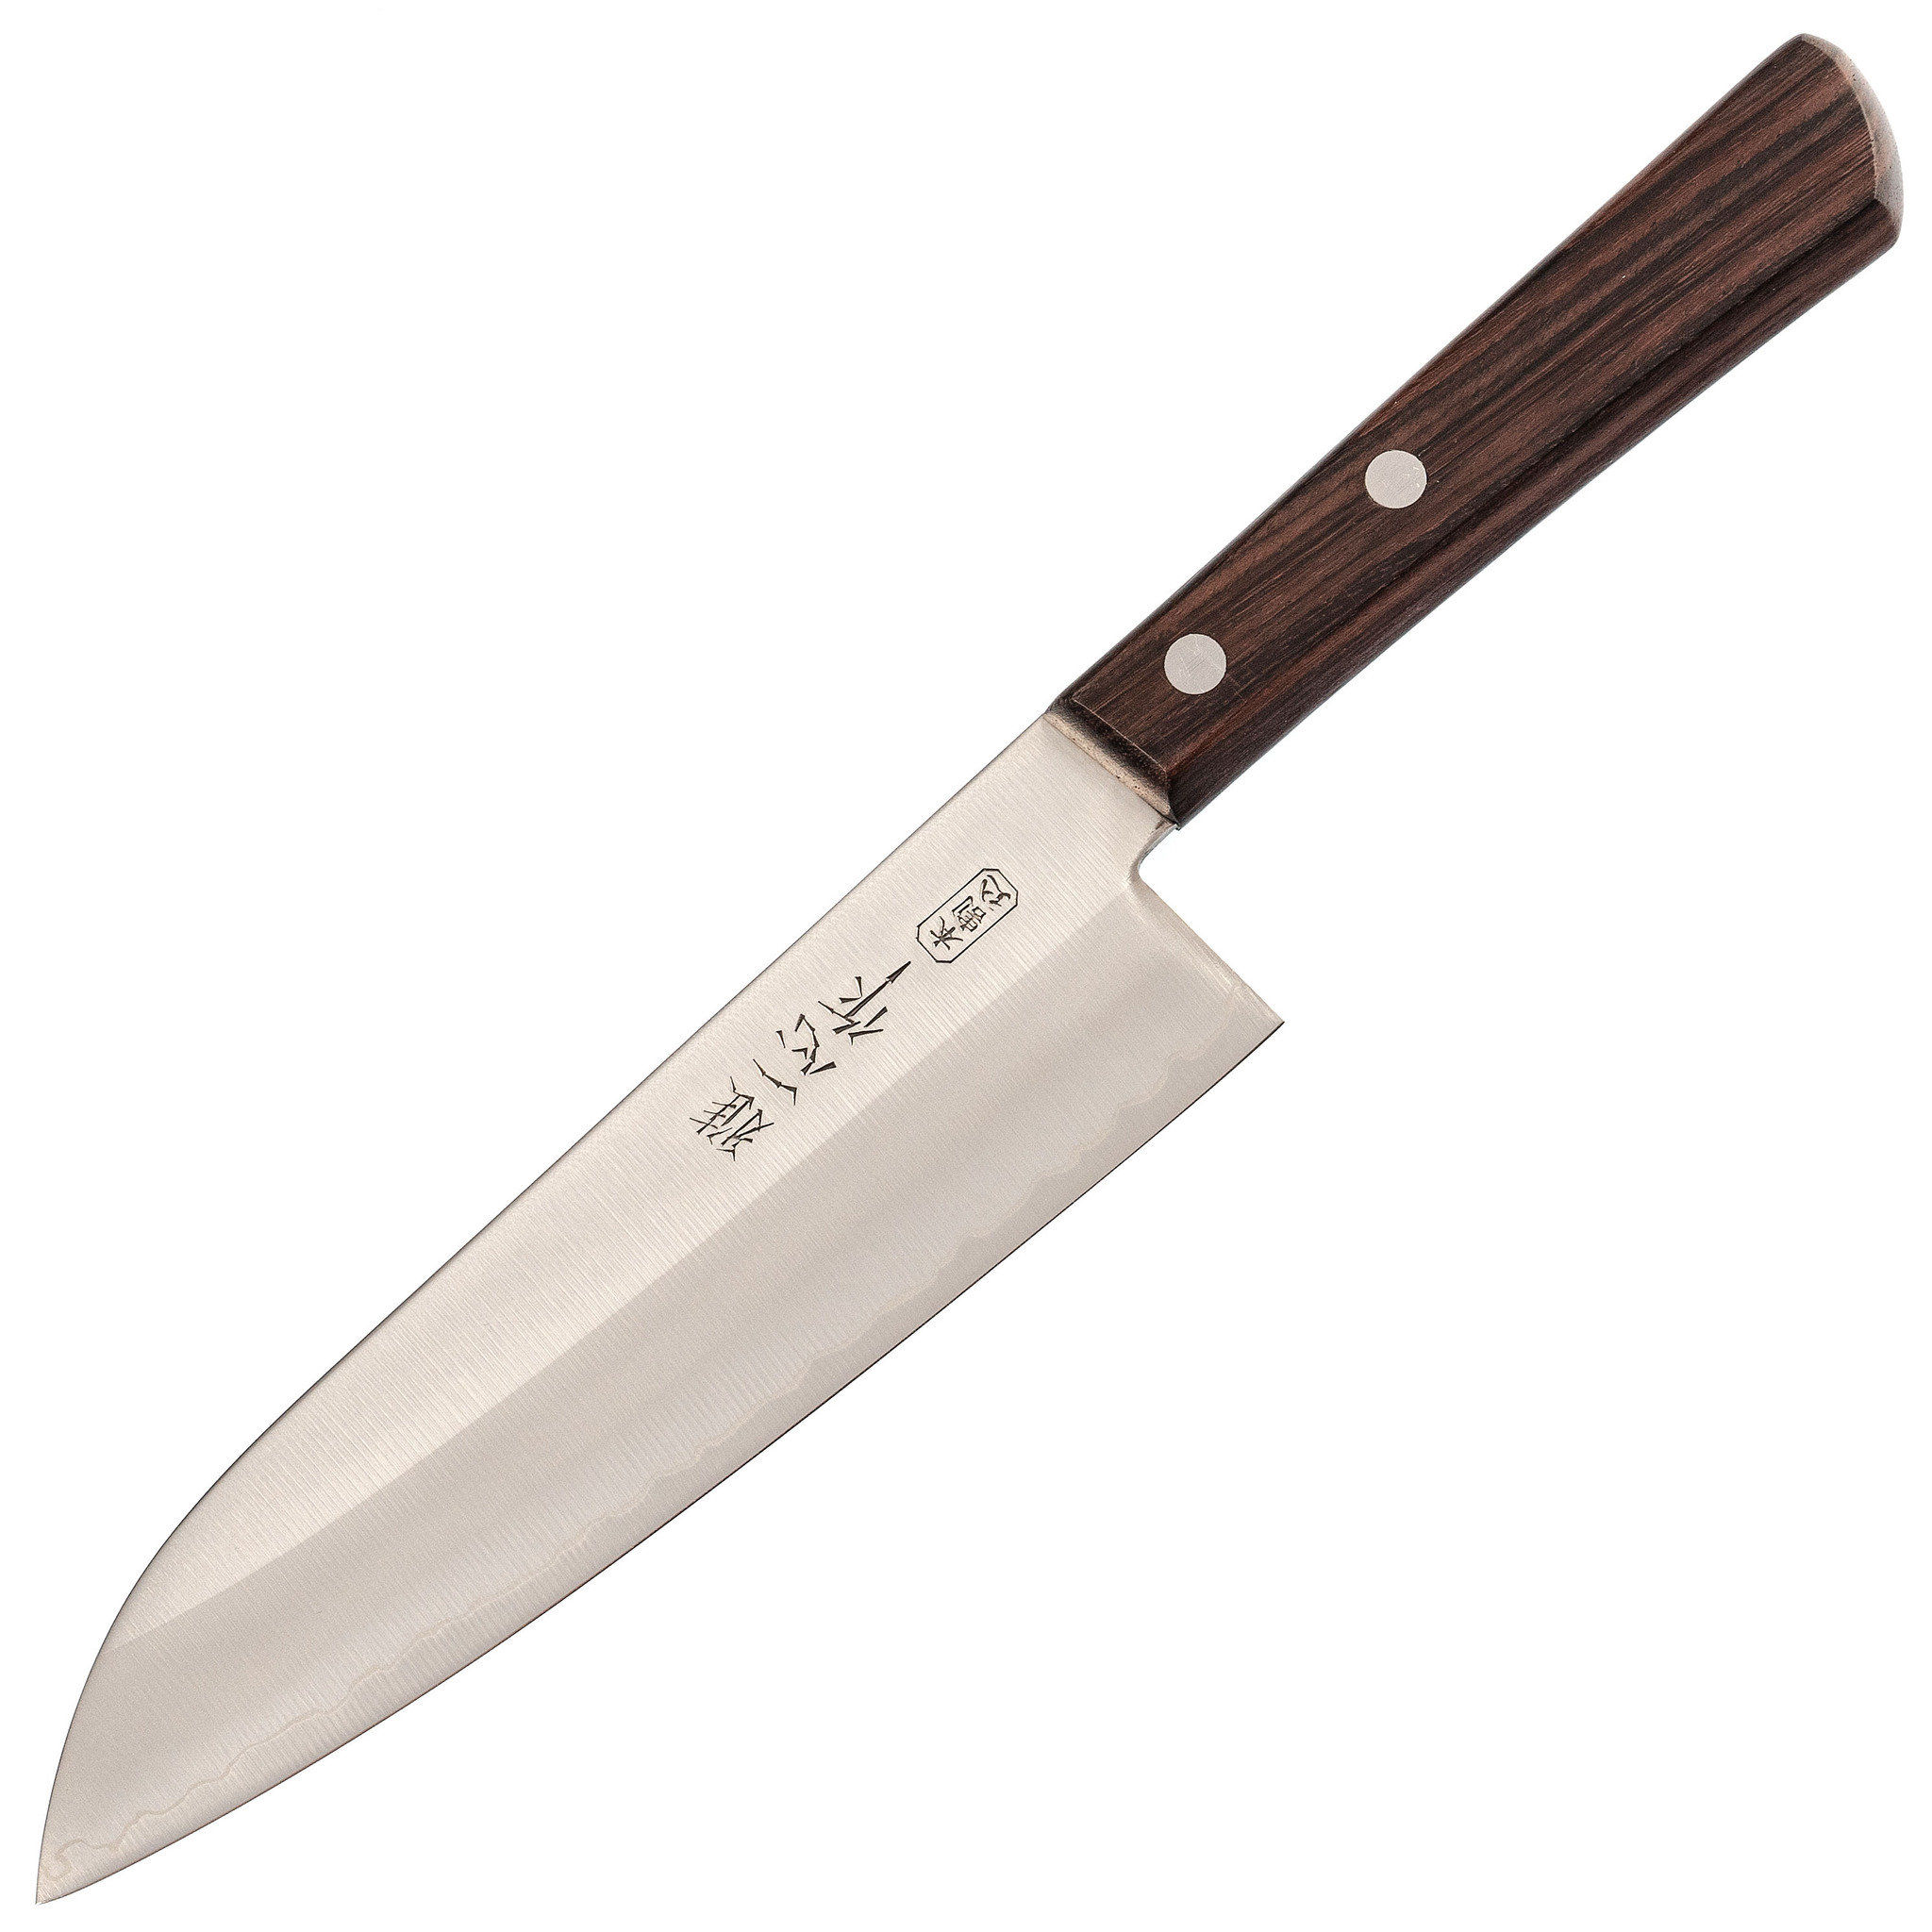 Поварской кухонный шеф нож Сантоку Kanetsugu Special Offer 17 см, сталь Aus 8 / Laminated Sus 410 Stainless Steel, рукоять розовое дерево